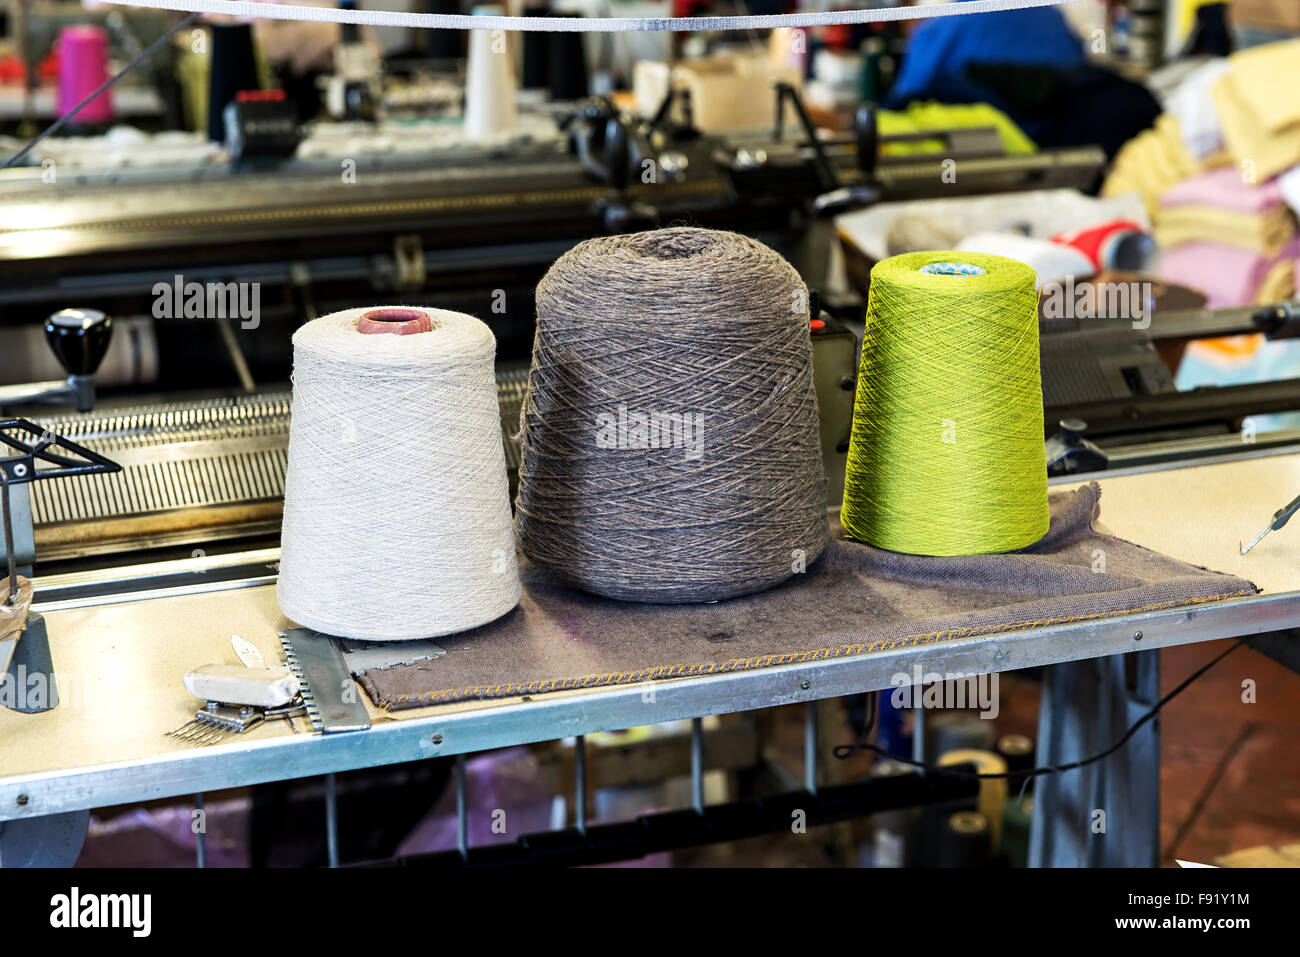 Dettaglio di tre dimensioni industriali rocchetti di filo di cotone in una varietà di colori nella produzione industriale di magazzino Foto Stock